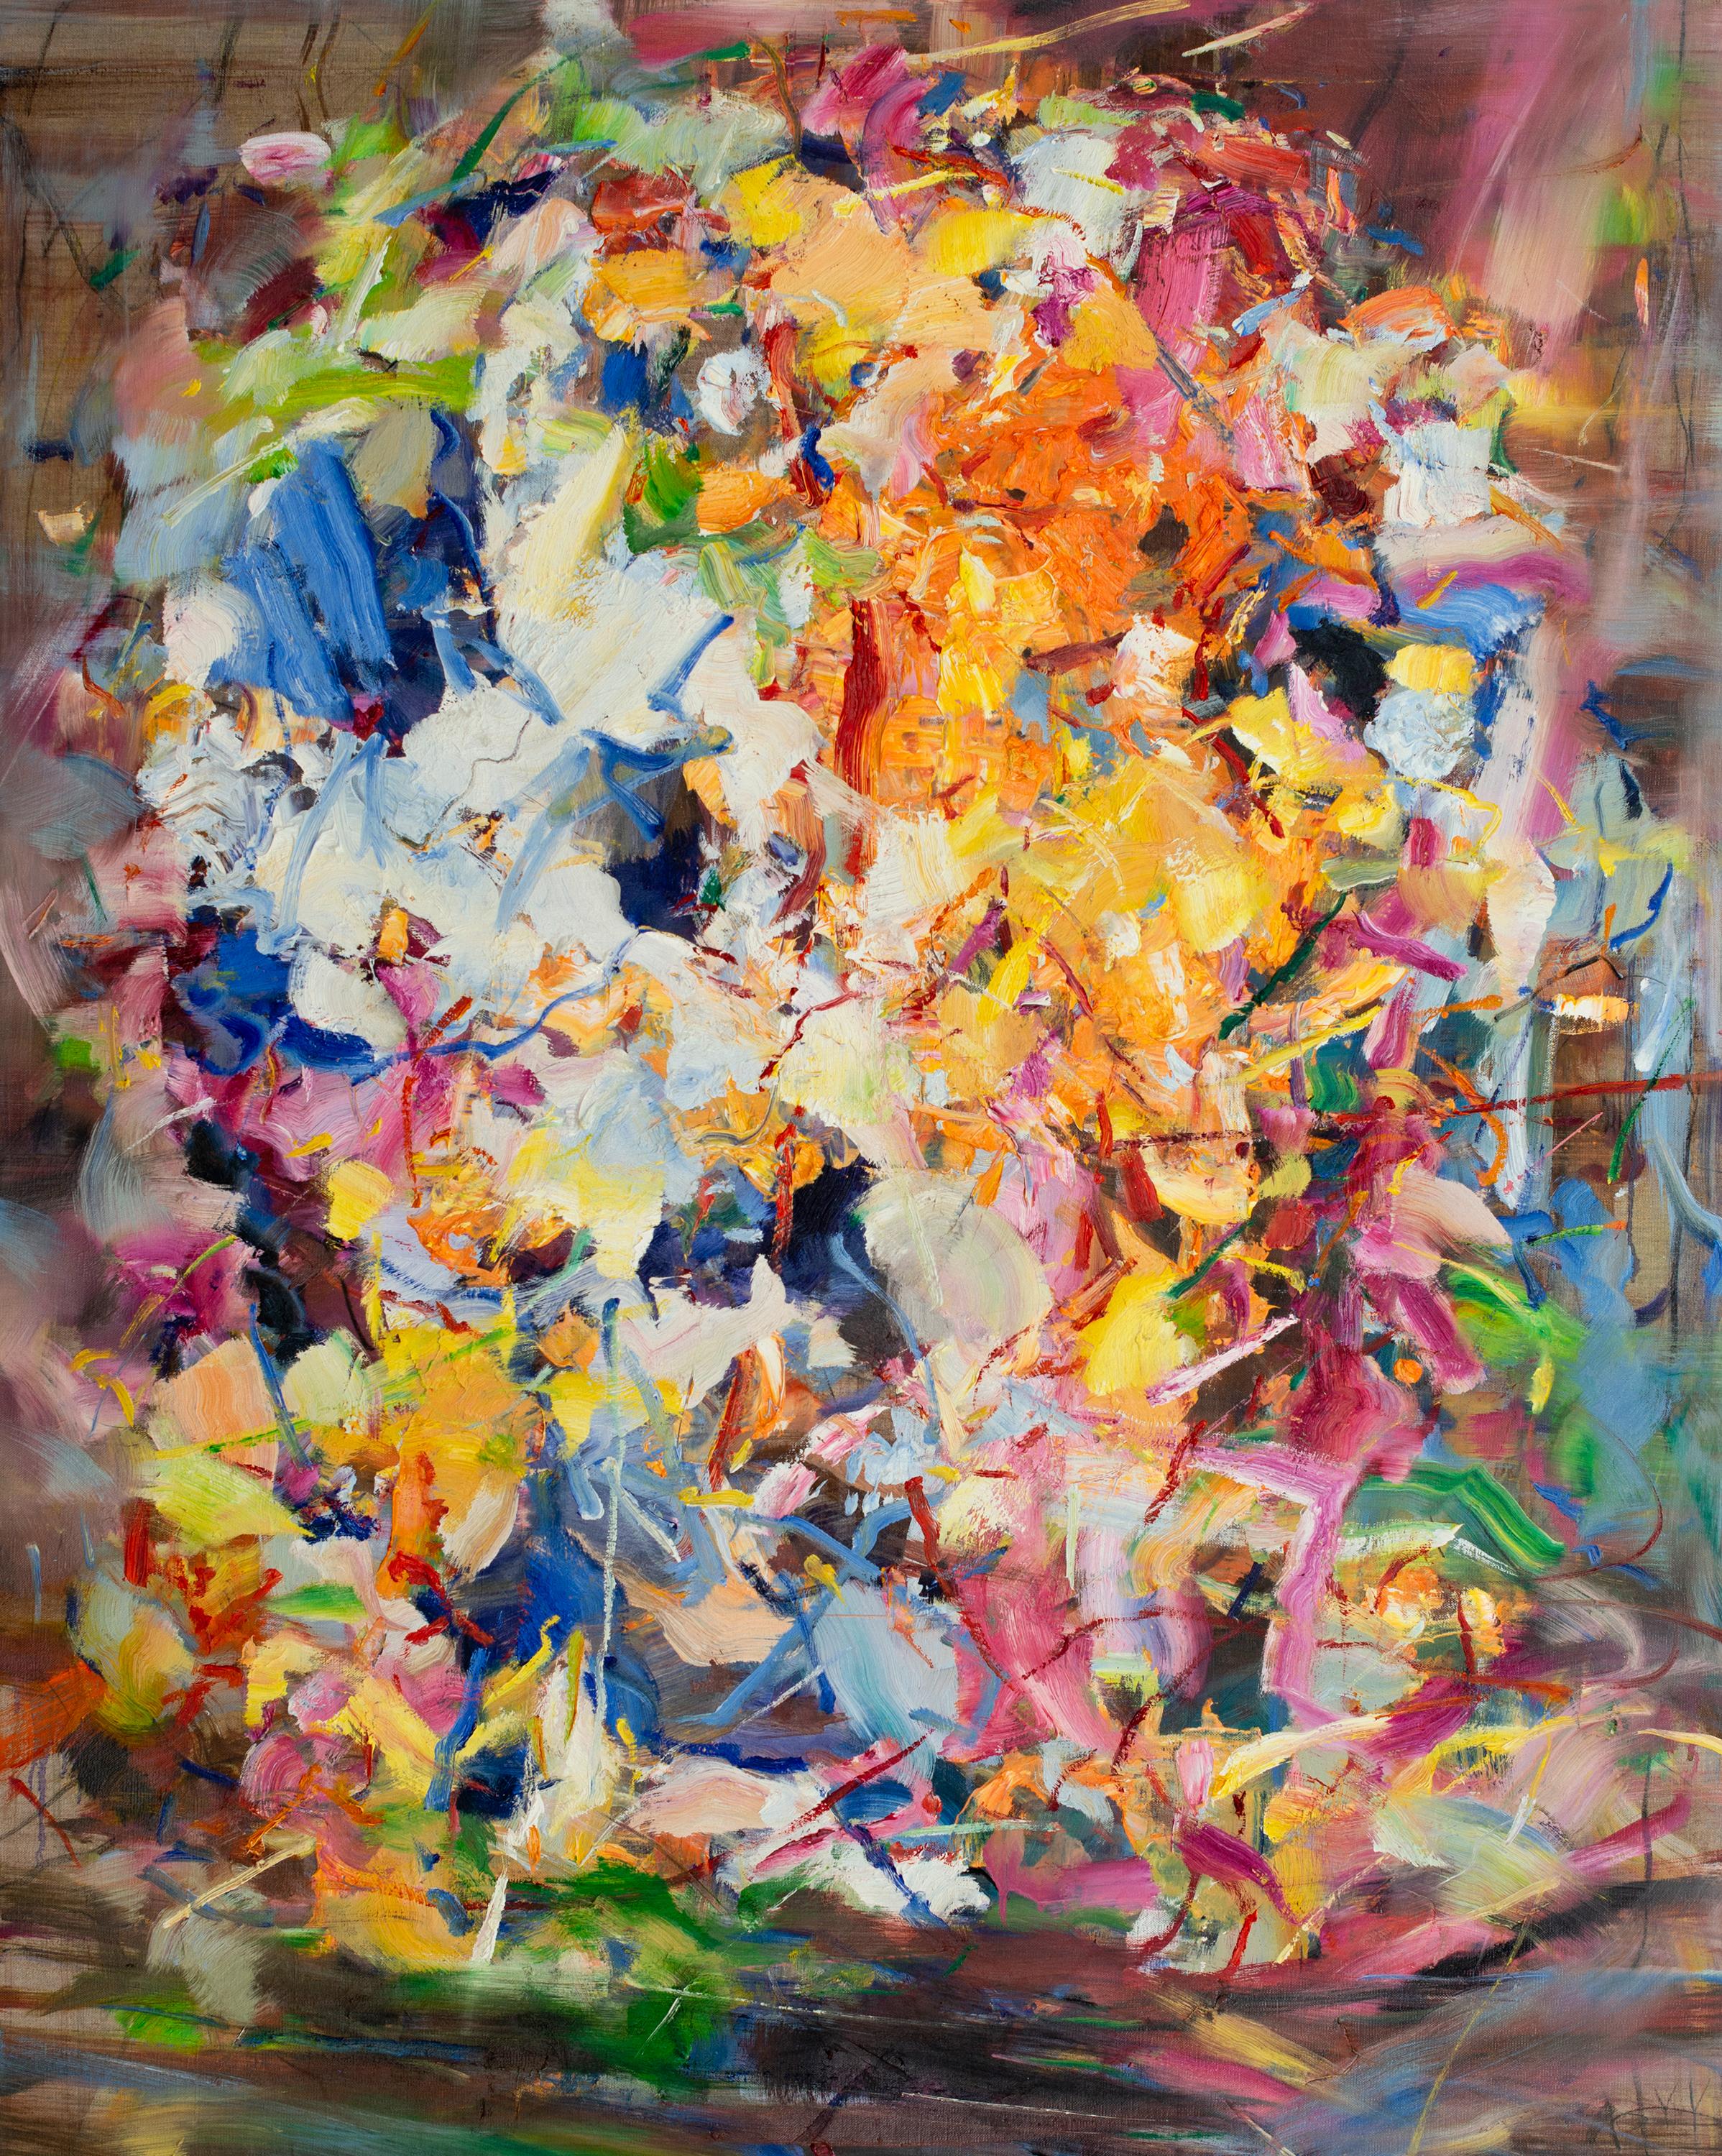 Awake" 2021 des chinesisch-kanadischen Künstlers Yangyang Pan. Öl auf Leinen, 50 x 40 cm. Dieses wunderschöne abstrakt-expressionistische Landschaftsgemälde enthält gestische Pinselstriche, die an einen Blumengarten in kräftigen Farben wie Gelb,